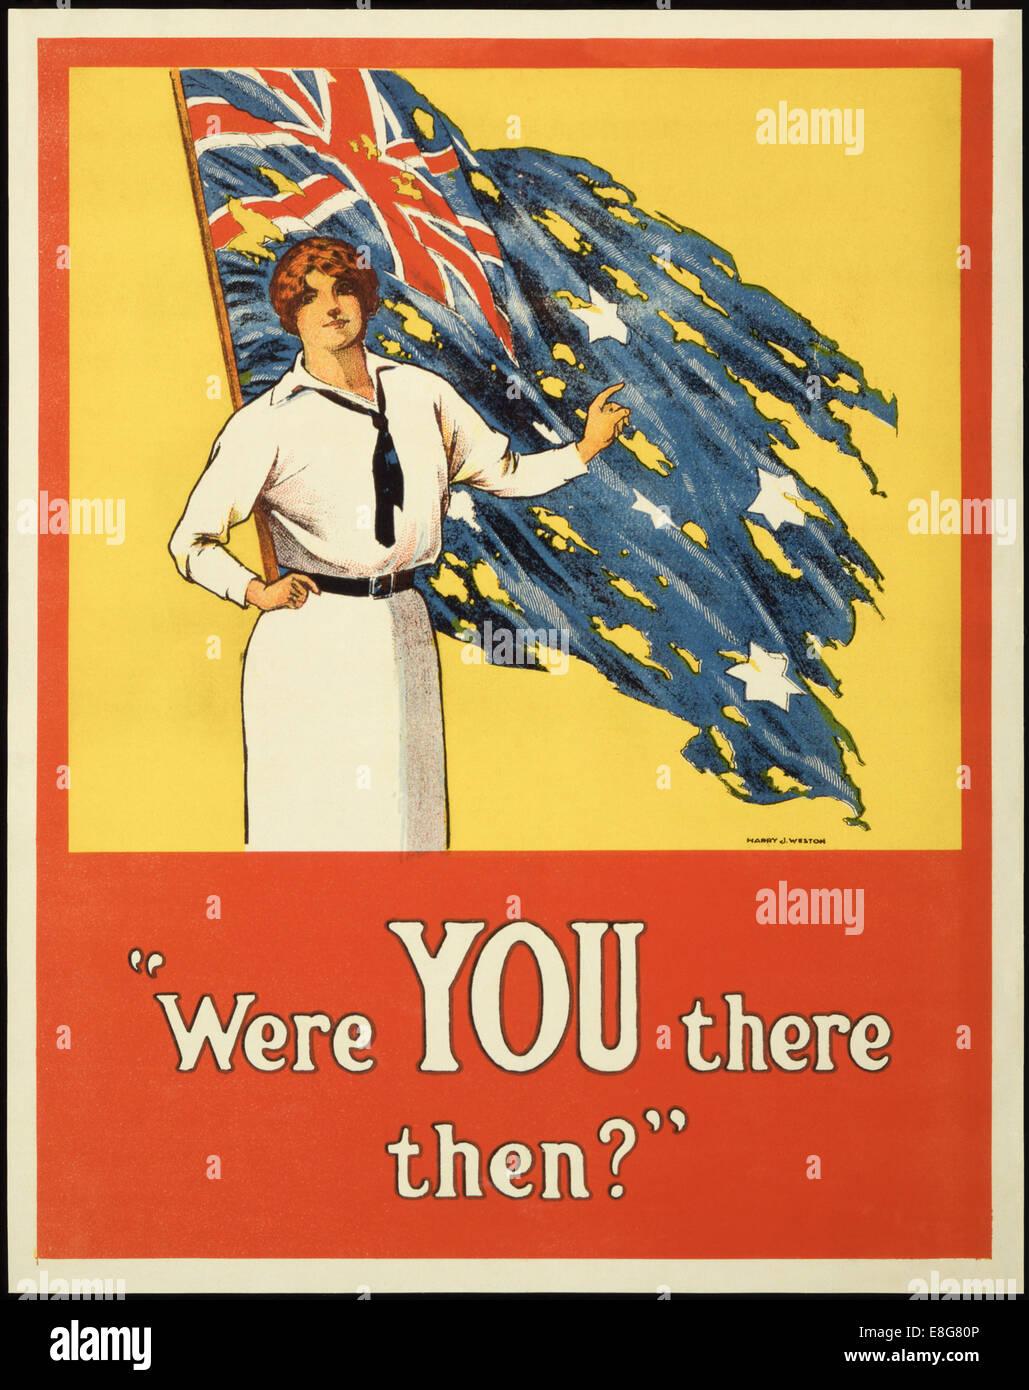 Australische recruiting Poster illustriert von Harry J Weston veröffentlichte im Jahre 1916. Siehe Beschreibung für mehr Informationen. Stockfoto